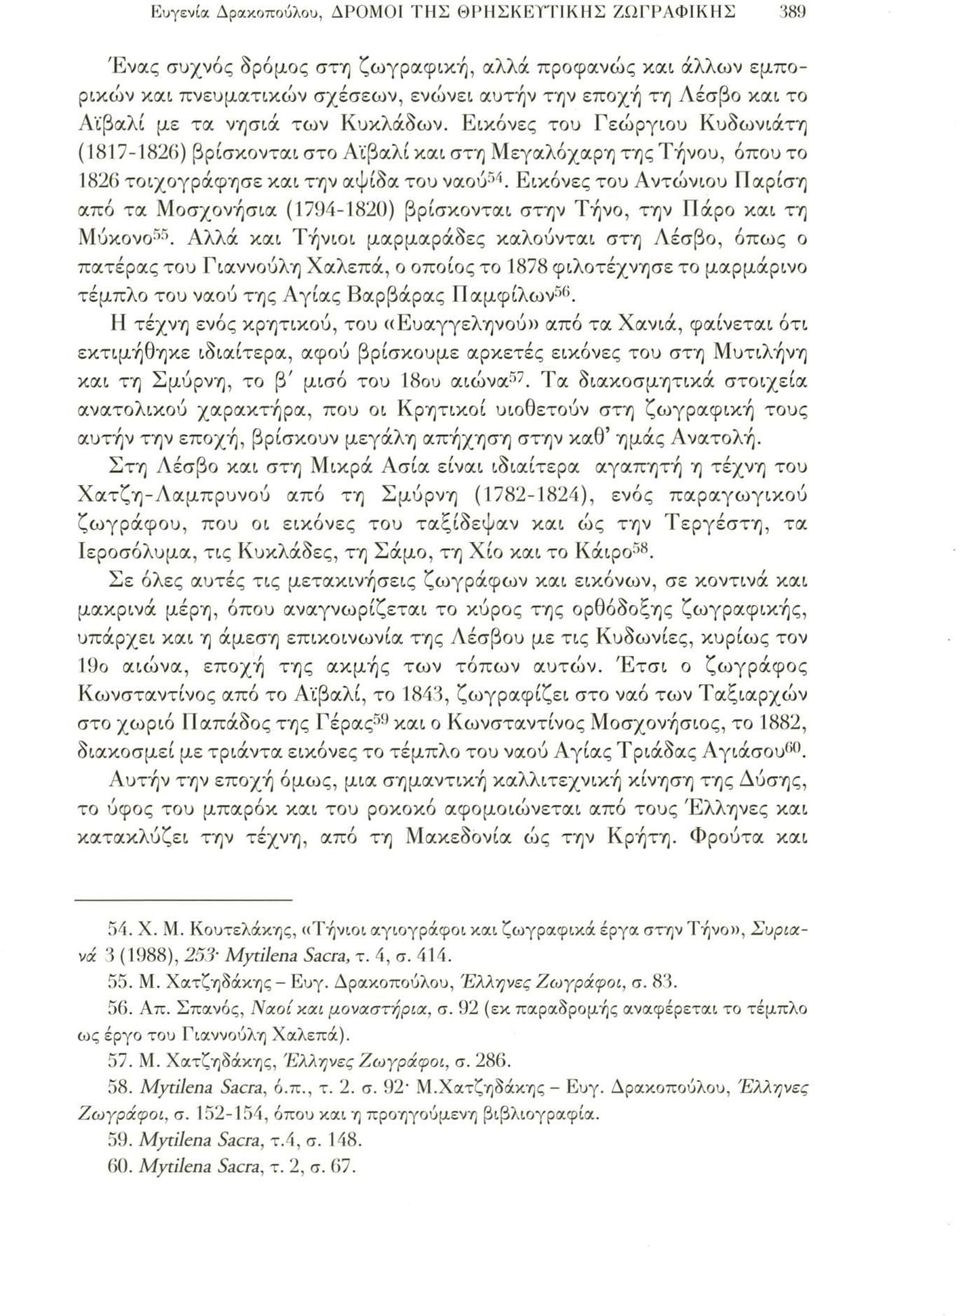 Εικόνες του Αντώνιου Παρίση από τα Μοσχονήσια (1794-1820) βρίσκονται στην Τήνο, την Πάρο και τη Μύκονο55.